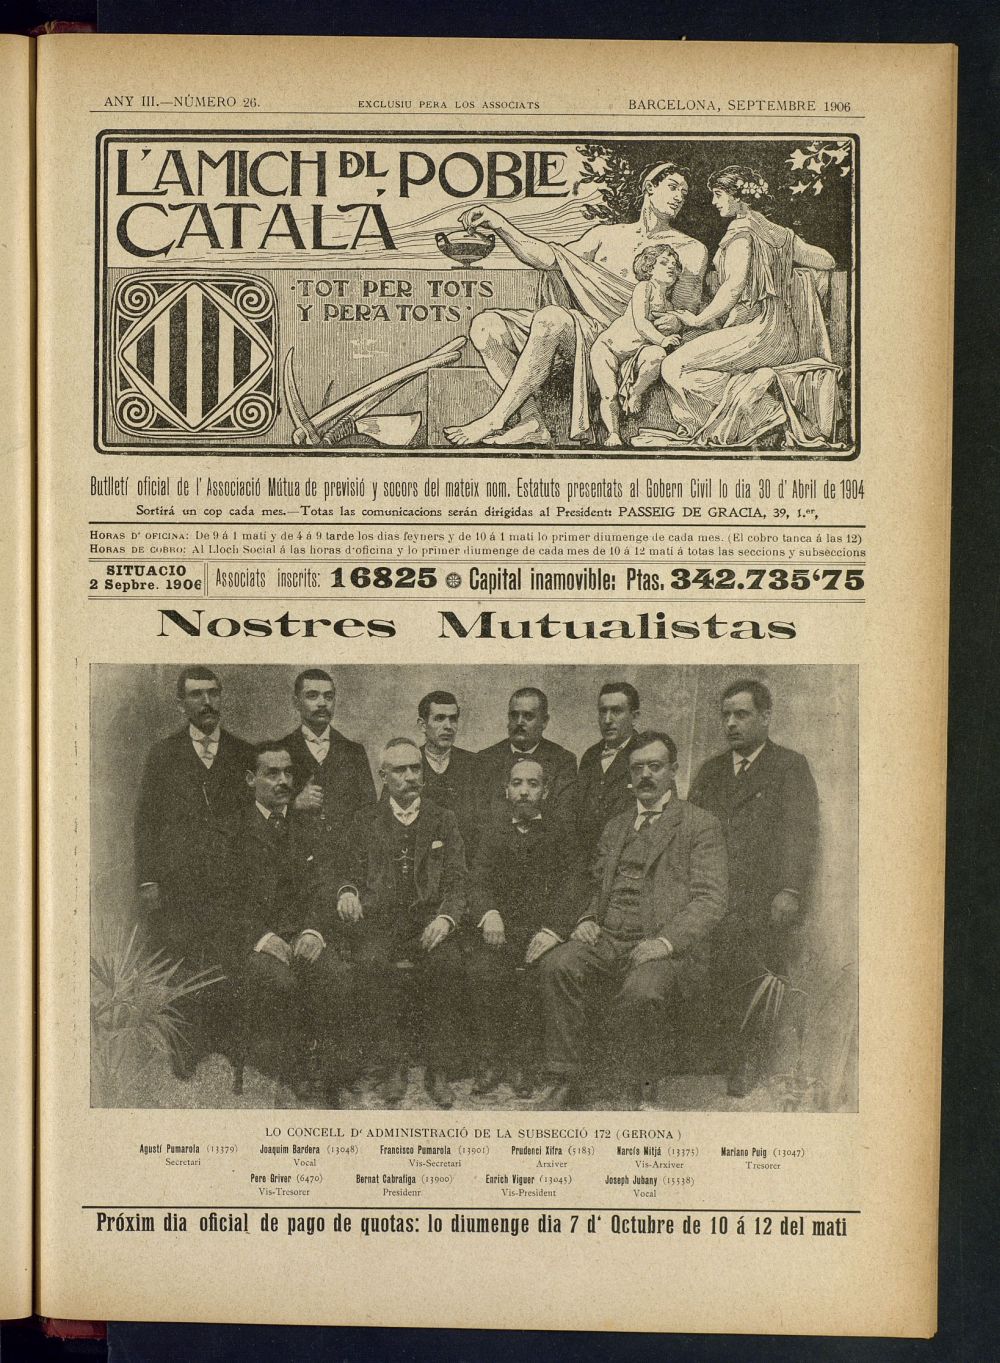 Lamich del poble catal: butllet oficial de lassociacio, ques publicara una volta cada mes de septembre de 1906